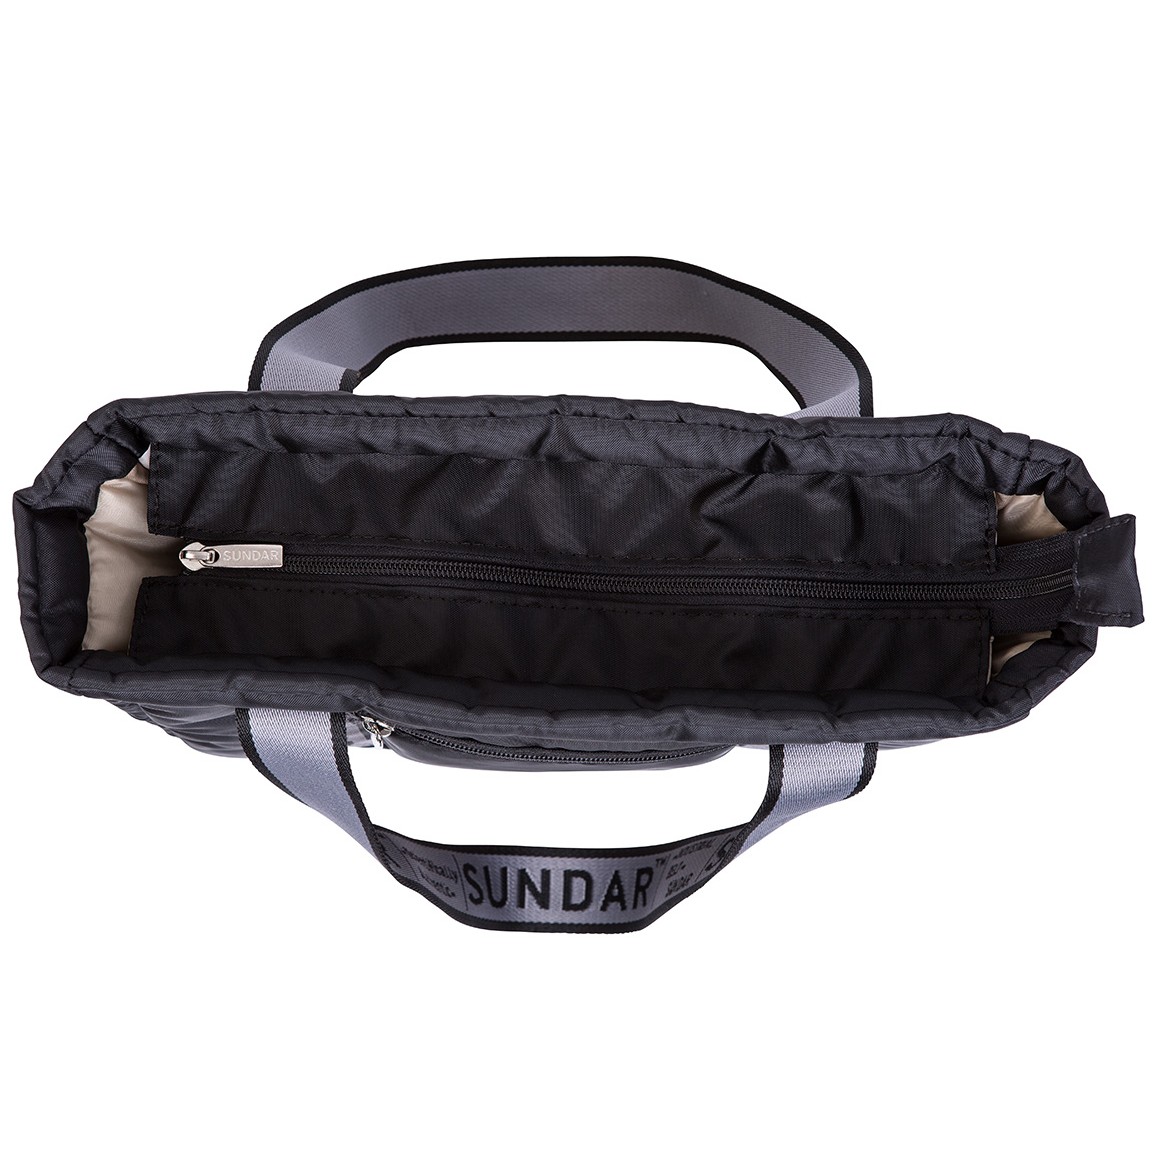 Black Basica 2020 Shoulder Bag with Black and Grey Strap